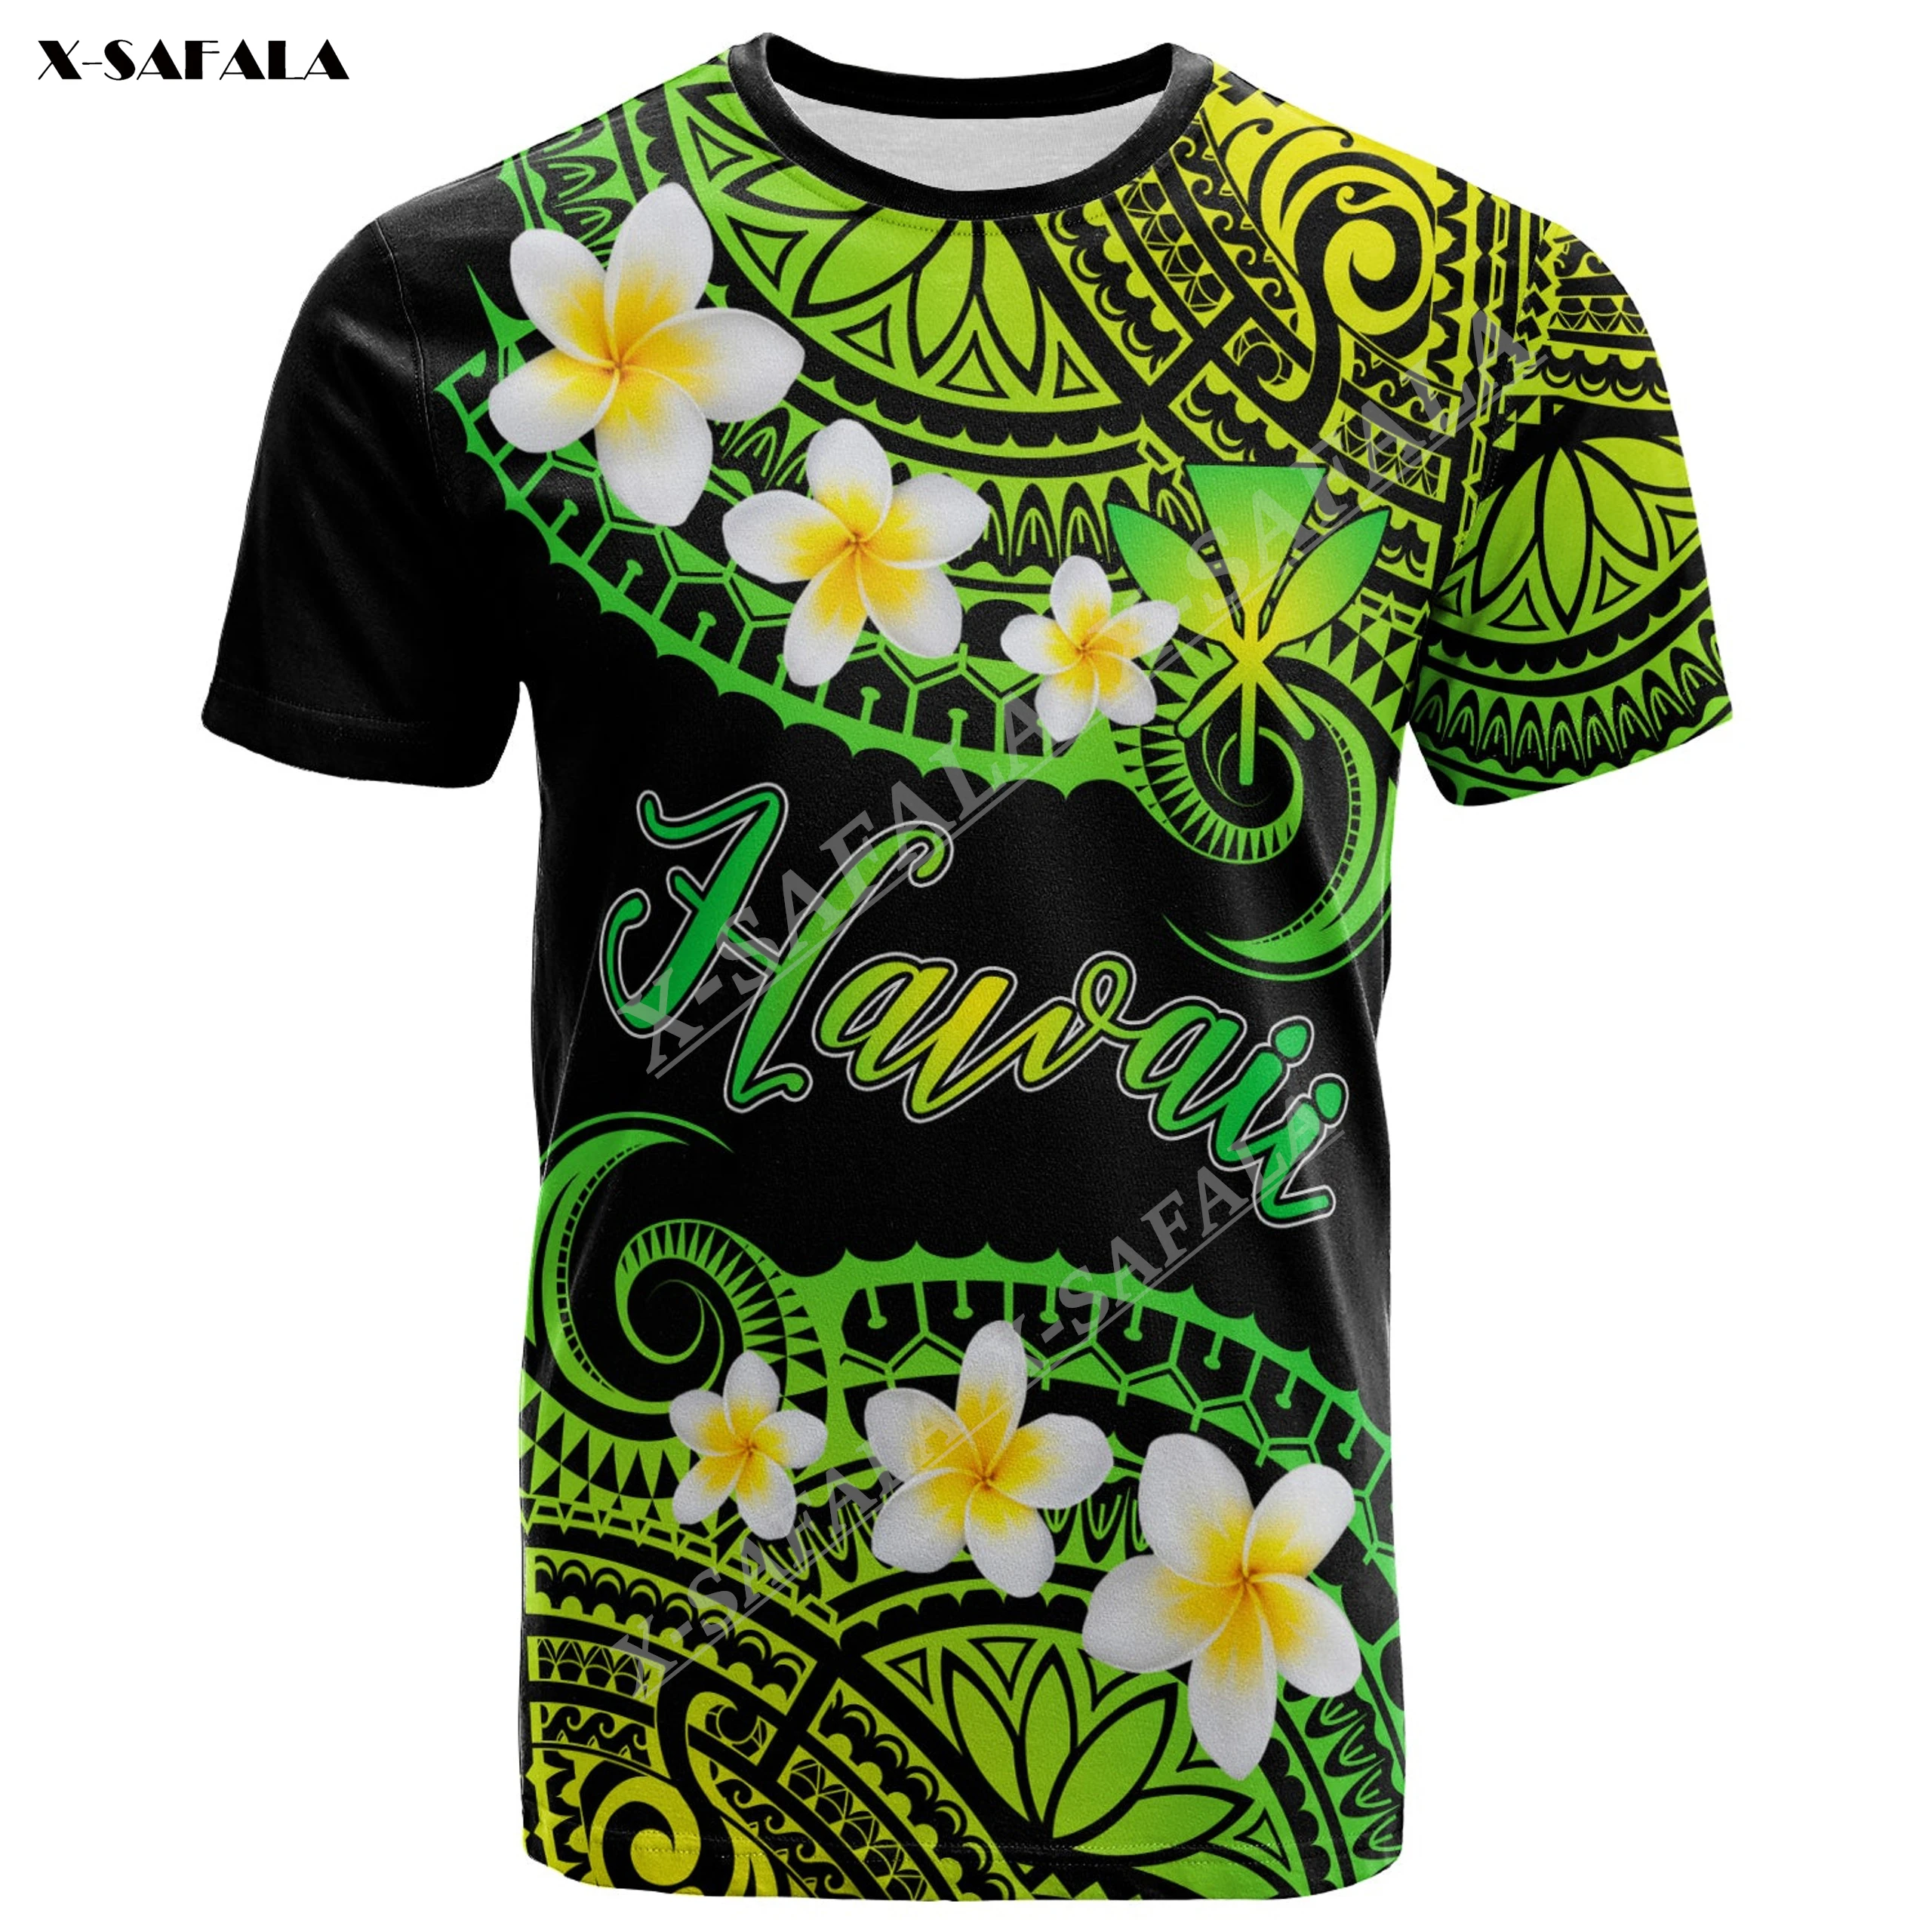 

Мужские футболки на заказ, гавайская Полинезия, Прямая поставка от производителя, 3D принт, футболки, футболки с коротким рукавом, повседневные быстросохнущие летние футболки из молочного волокна